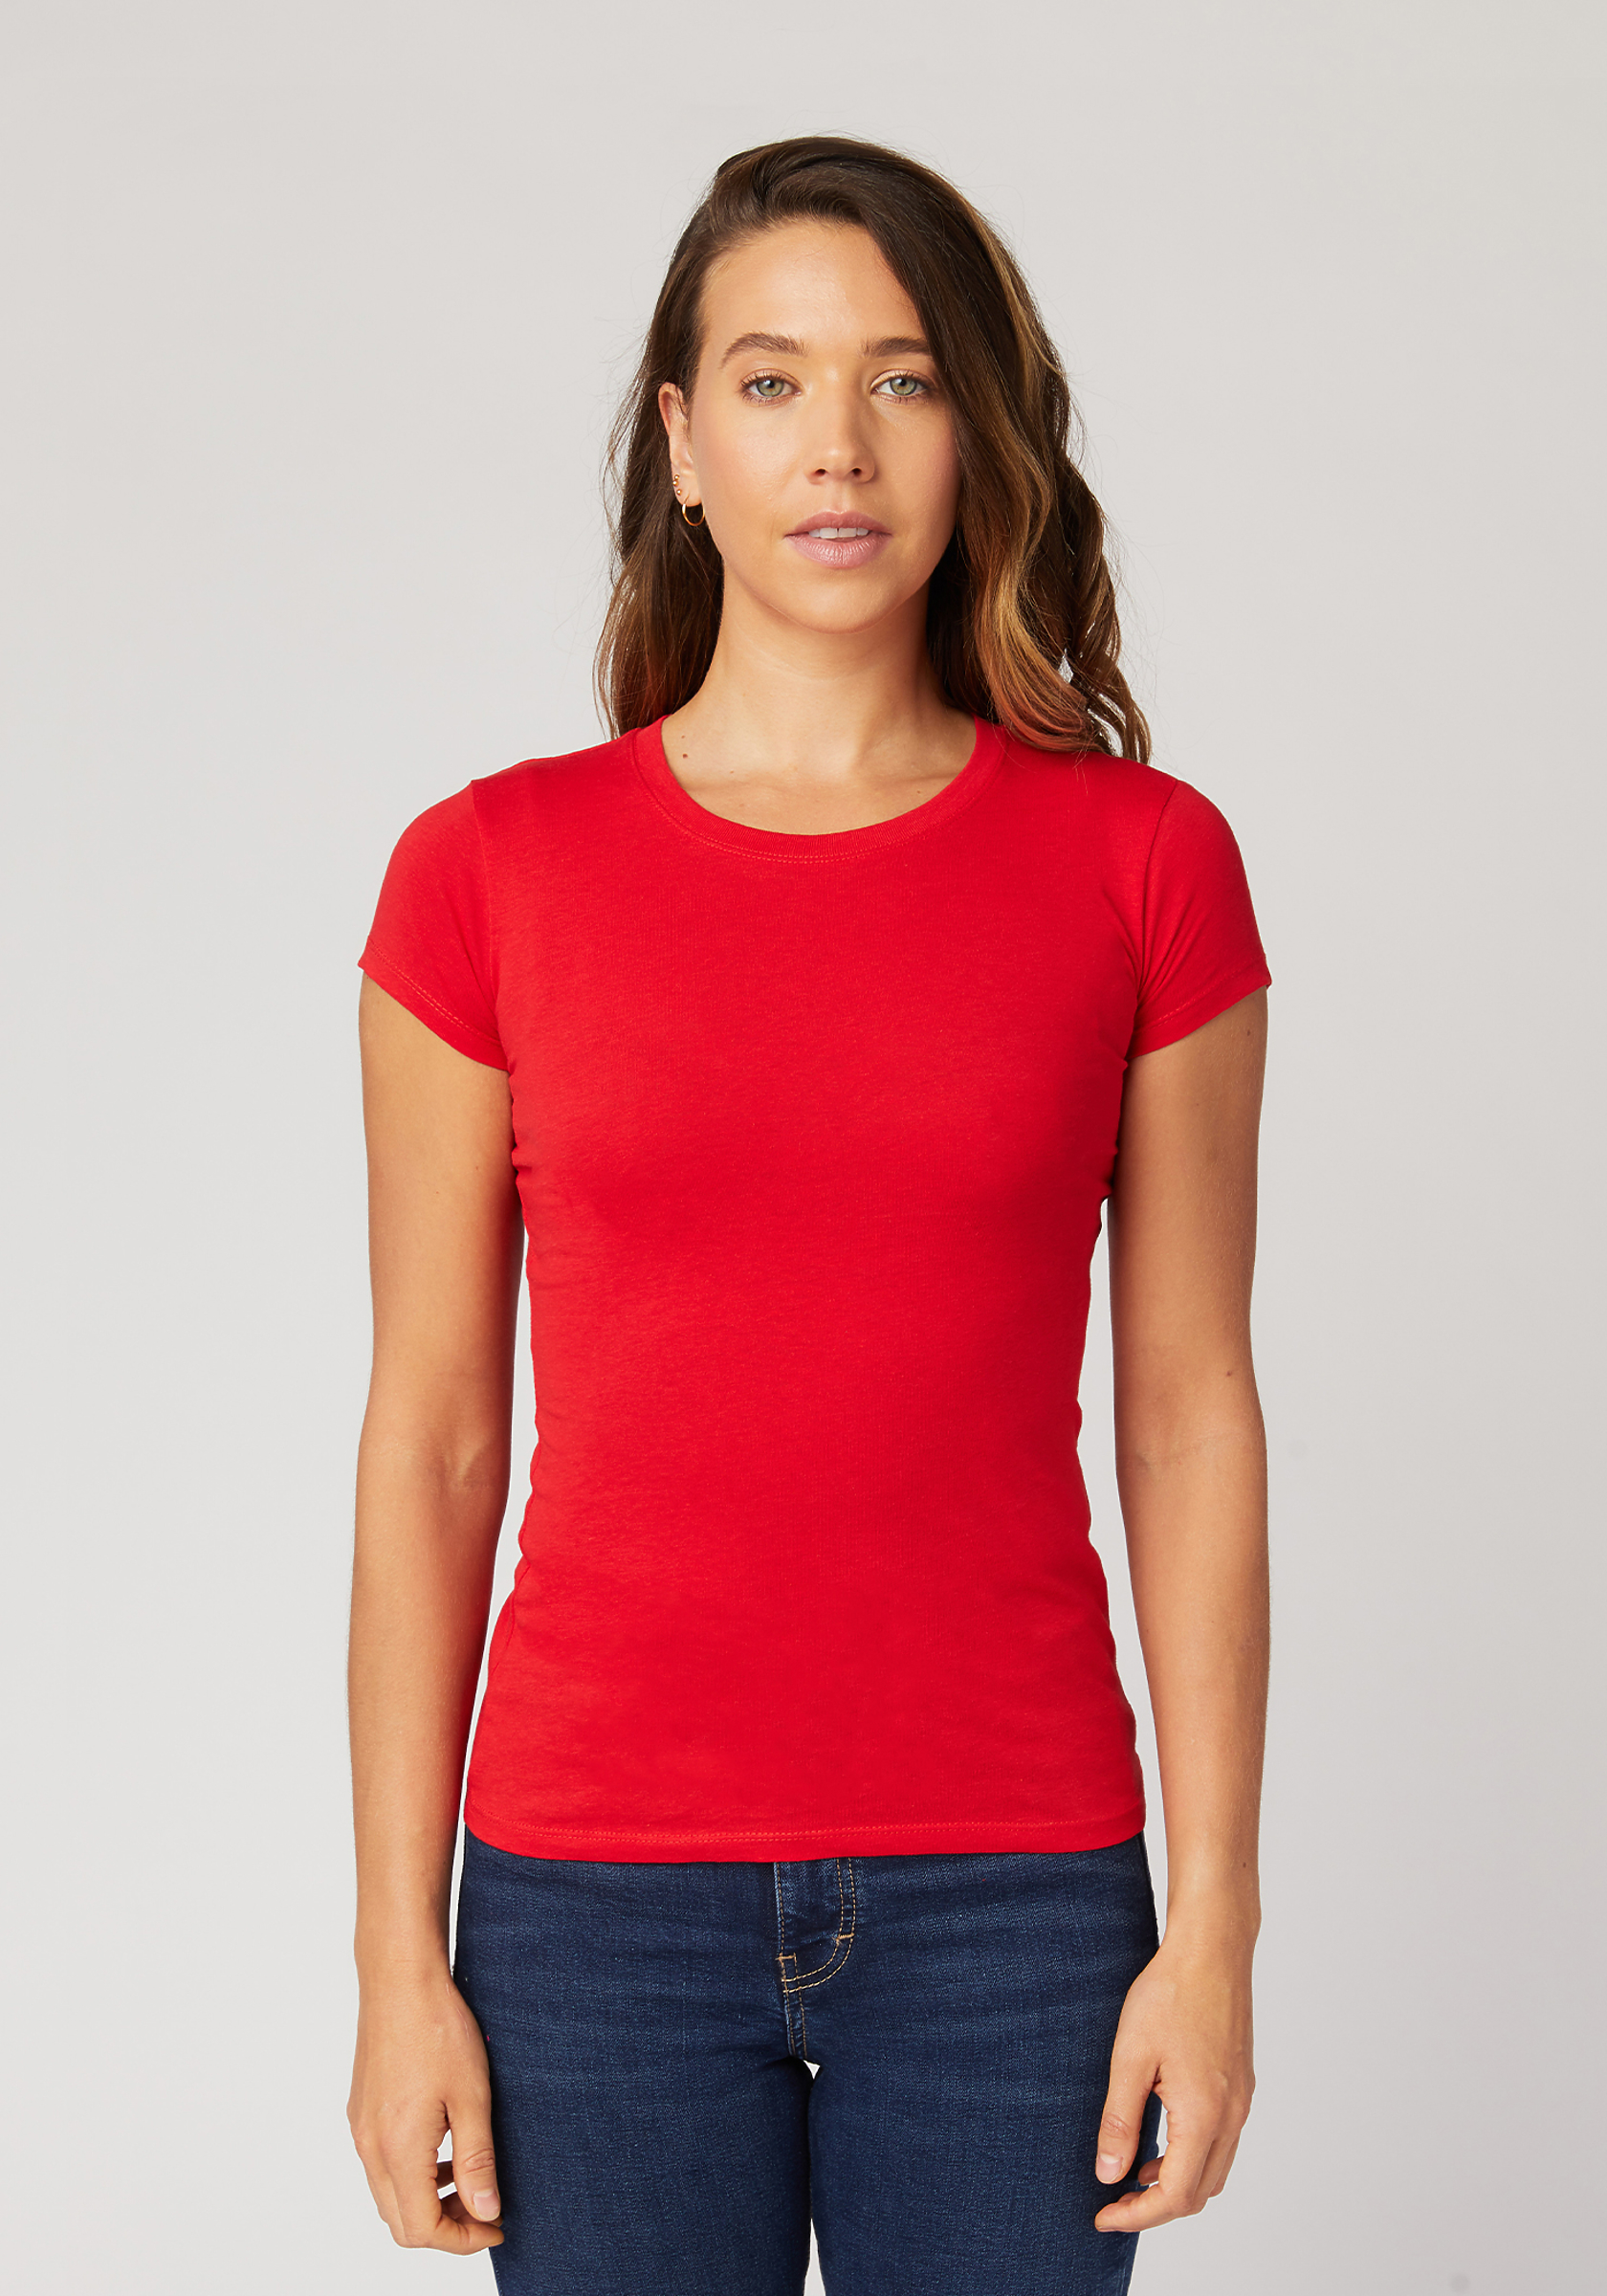 kiezen Ronde Republikeinse partij Women's Slim Fit T-Shirt | Cotton Heritage